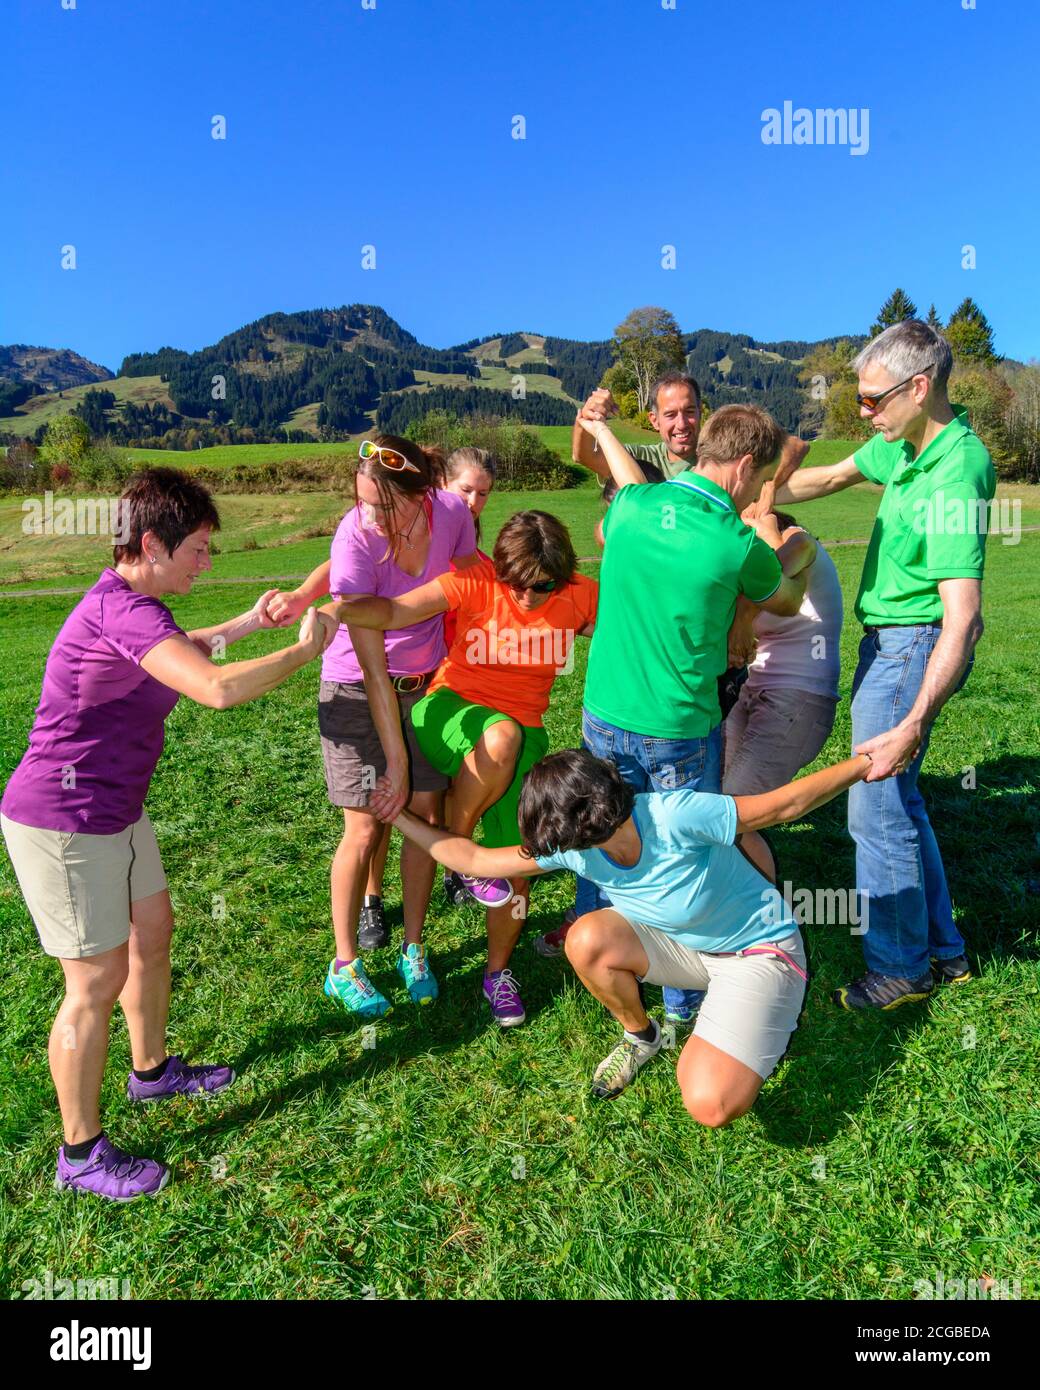 Eine Gruppe bei einer Teambuilding-Übung - das Zusammenspiel im Team bringt letztlich den Erfolg, auch und vor allem beim Lösen schwieriger Aufgaben - Foto Stock